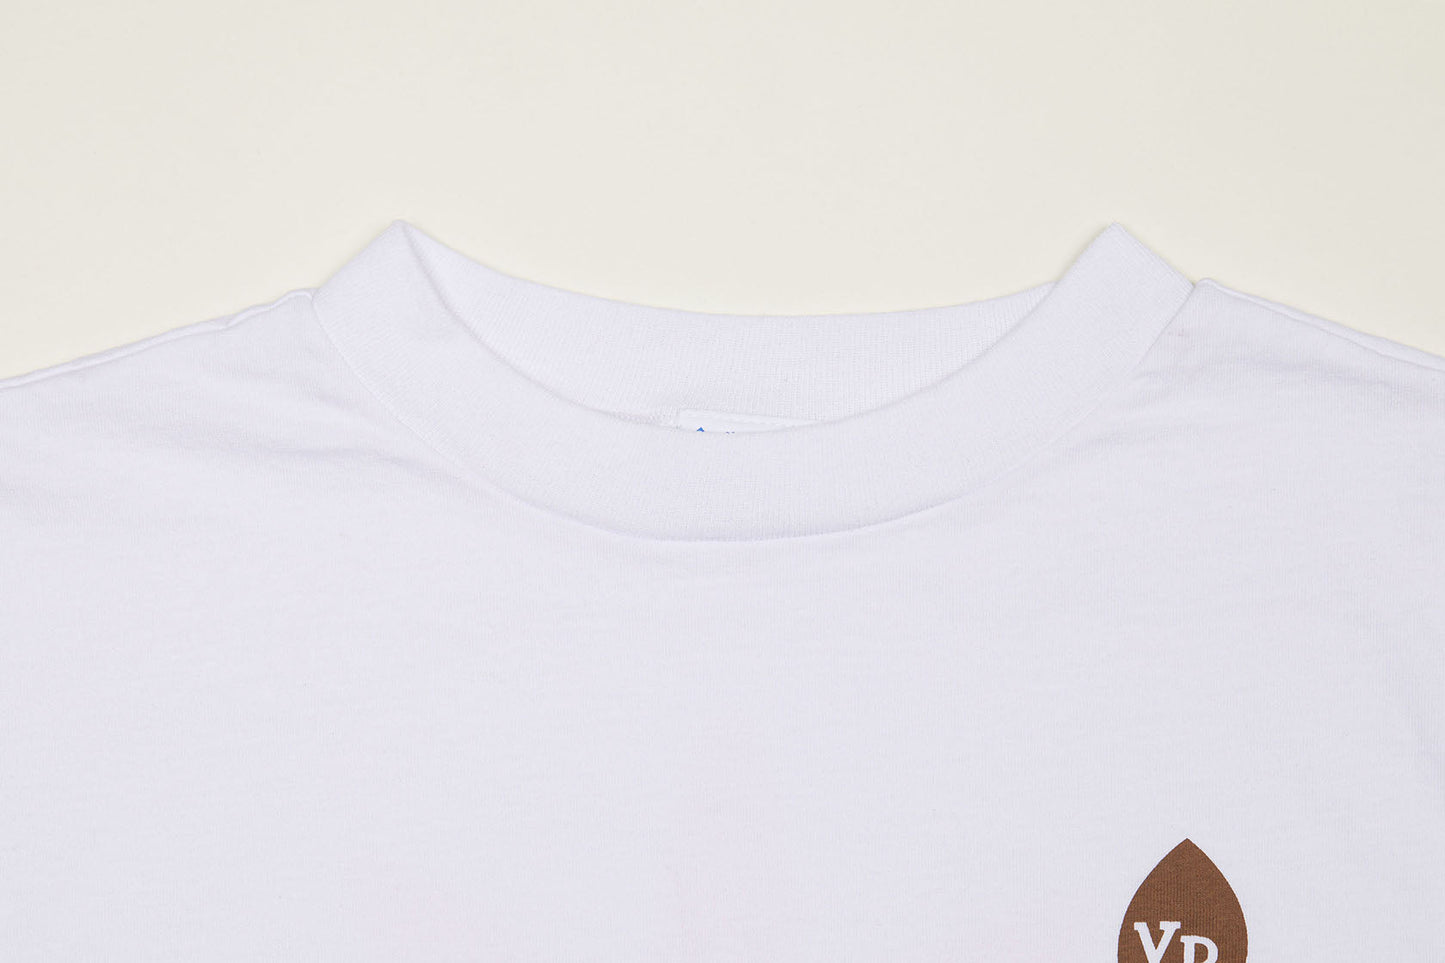 YR Flower Mock Neck Long Sleeve T-Shirt (White)